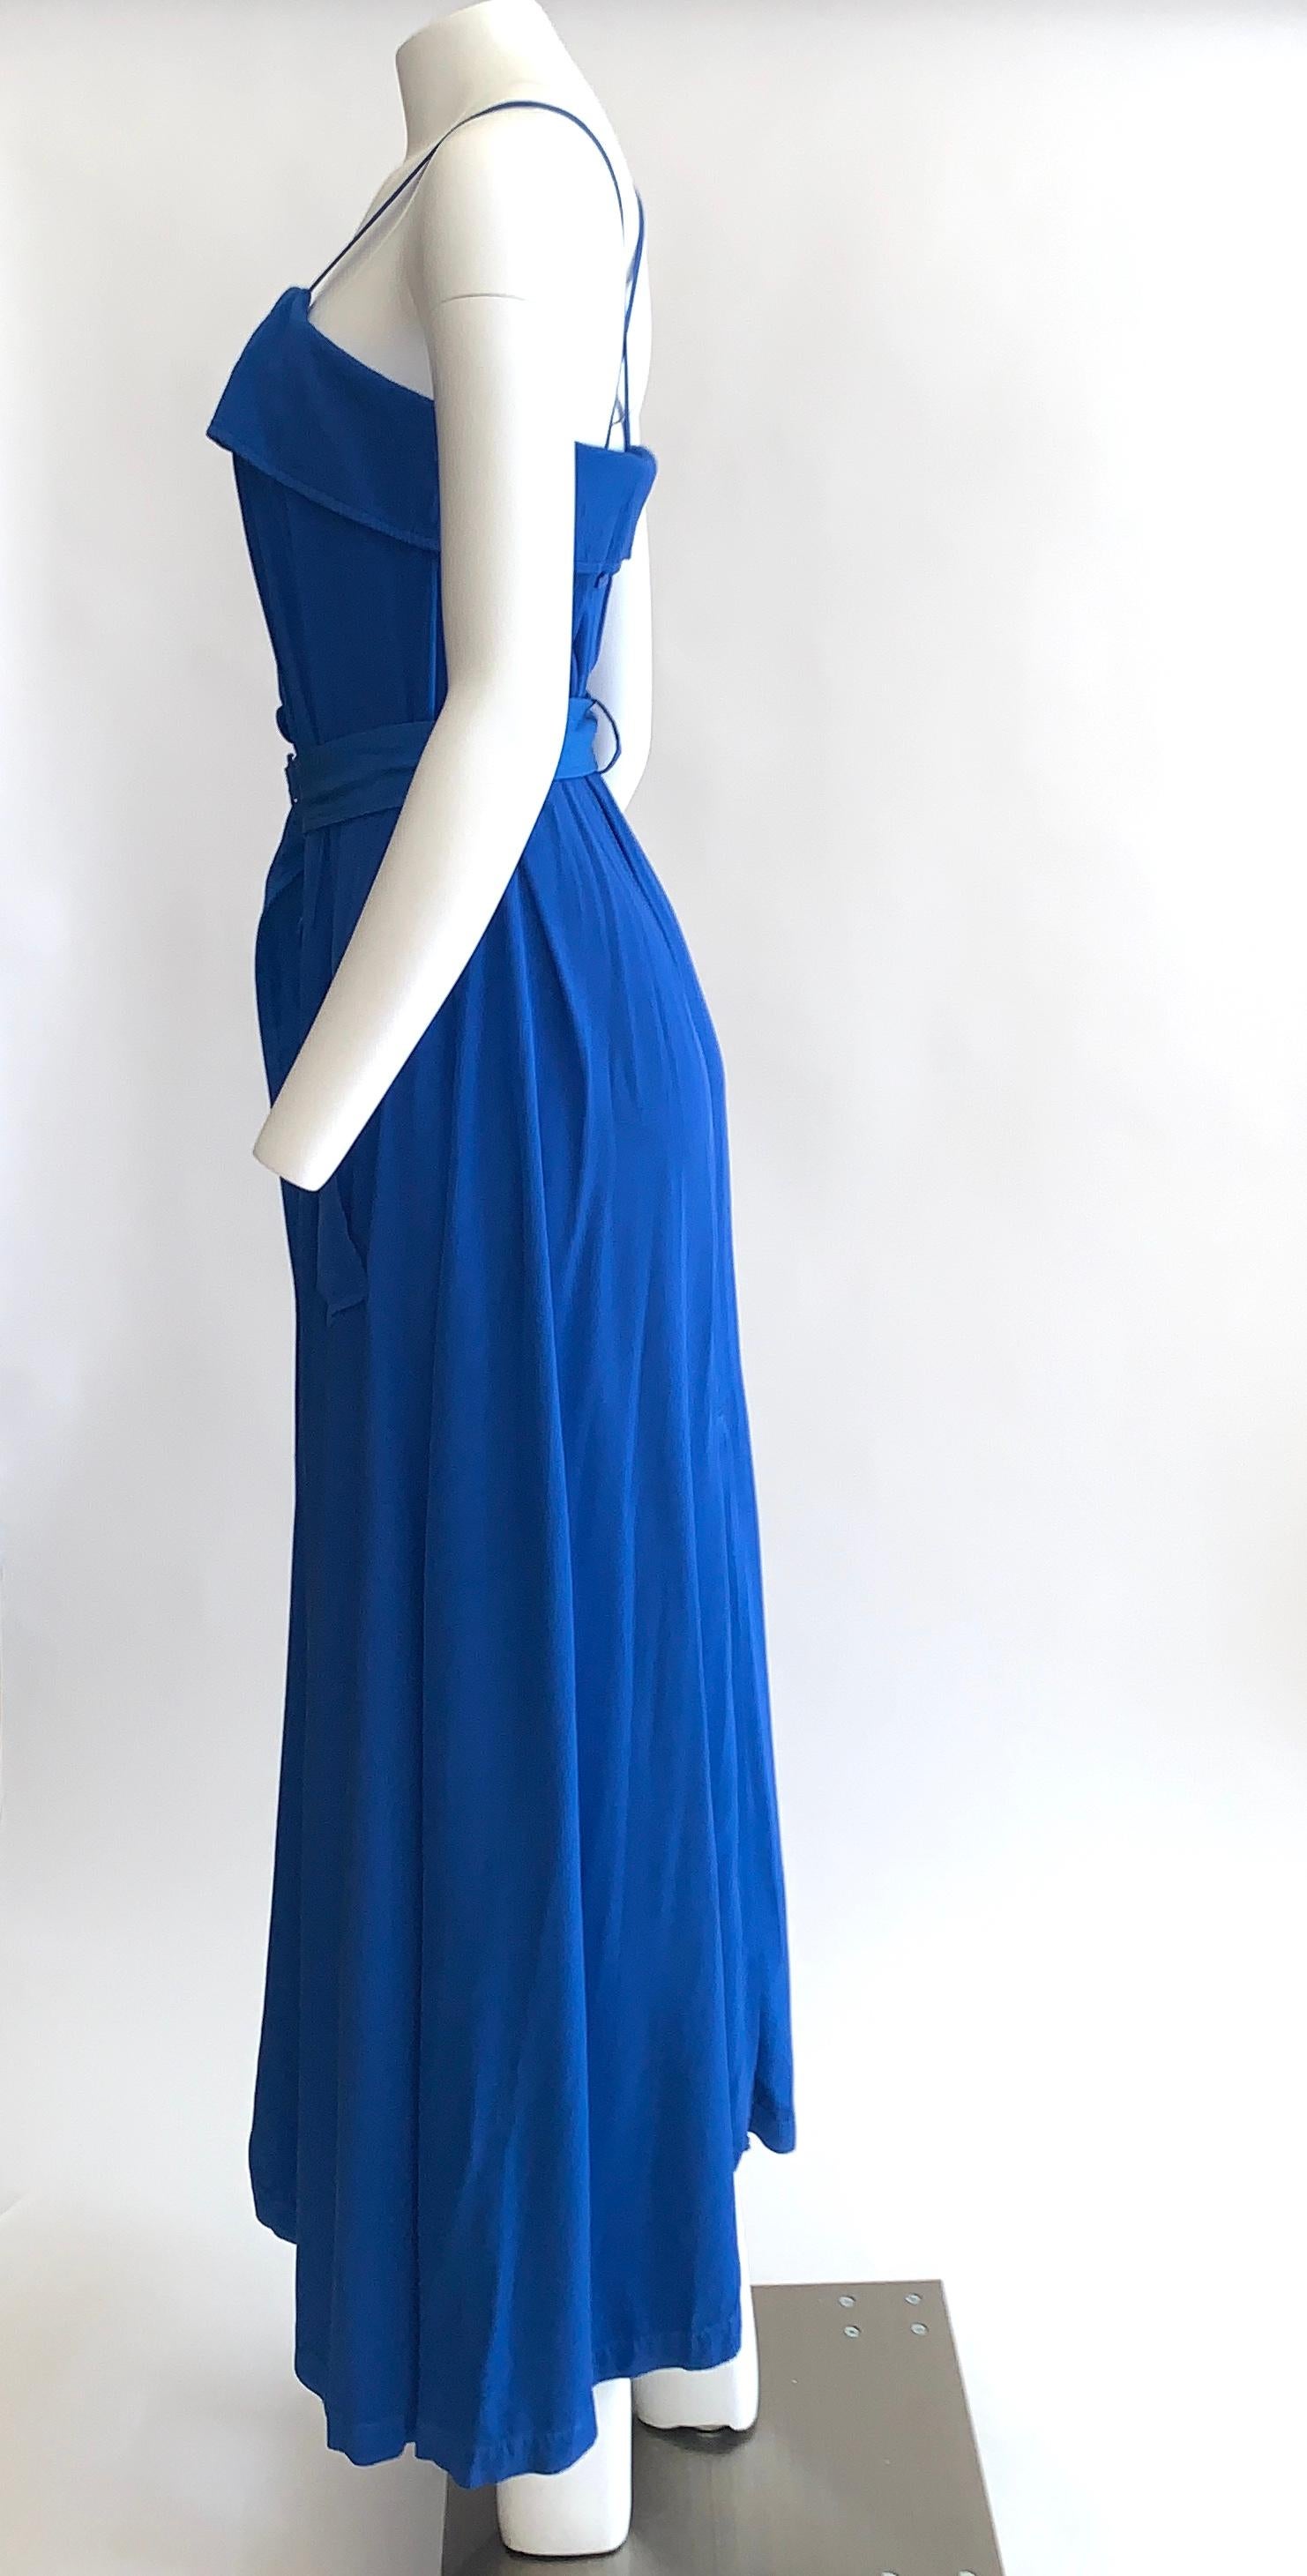 jean paul gaultier blue dress